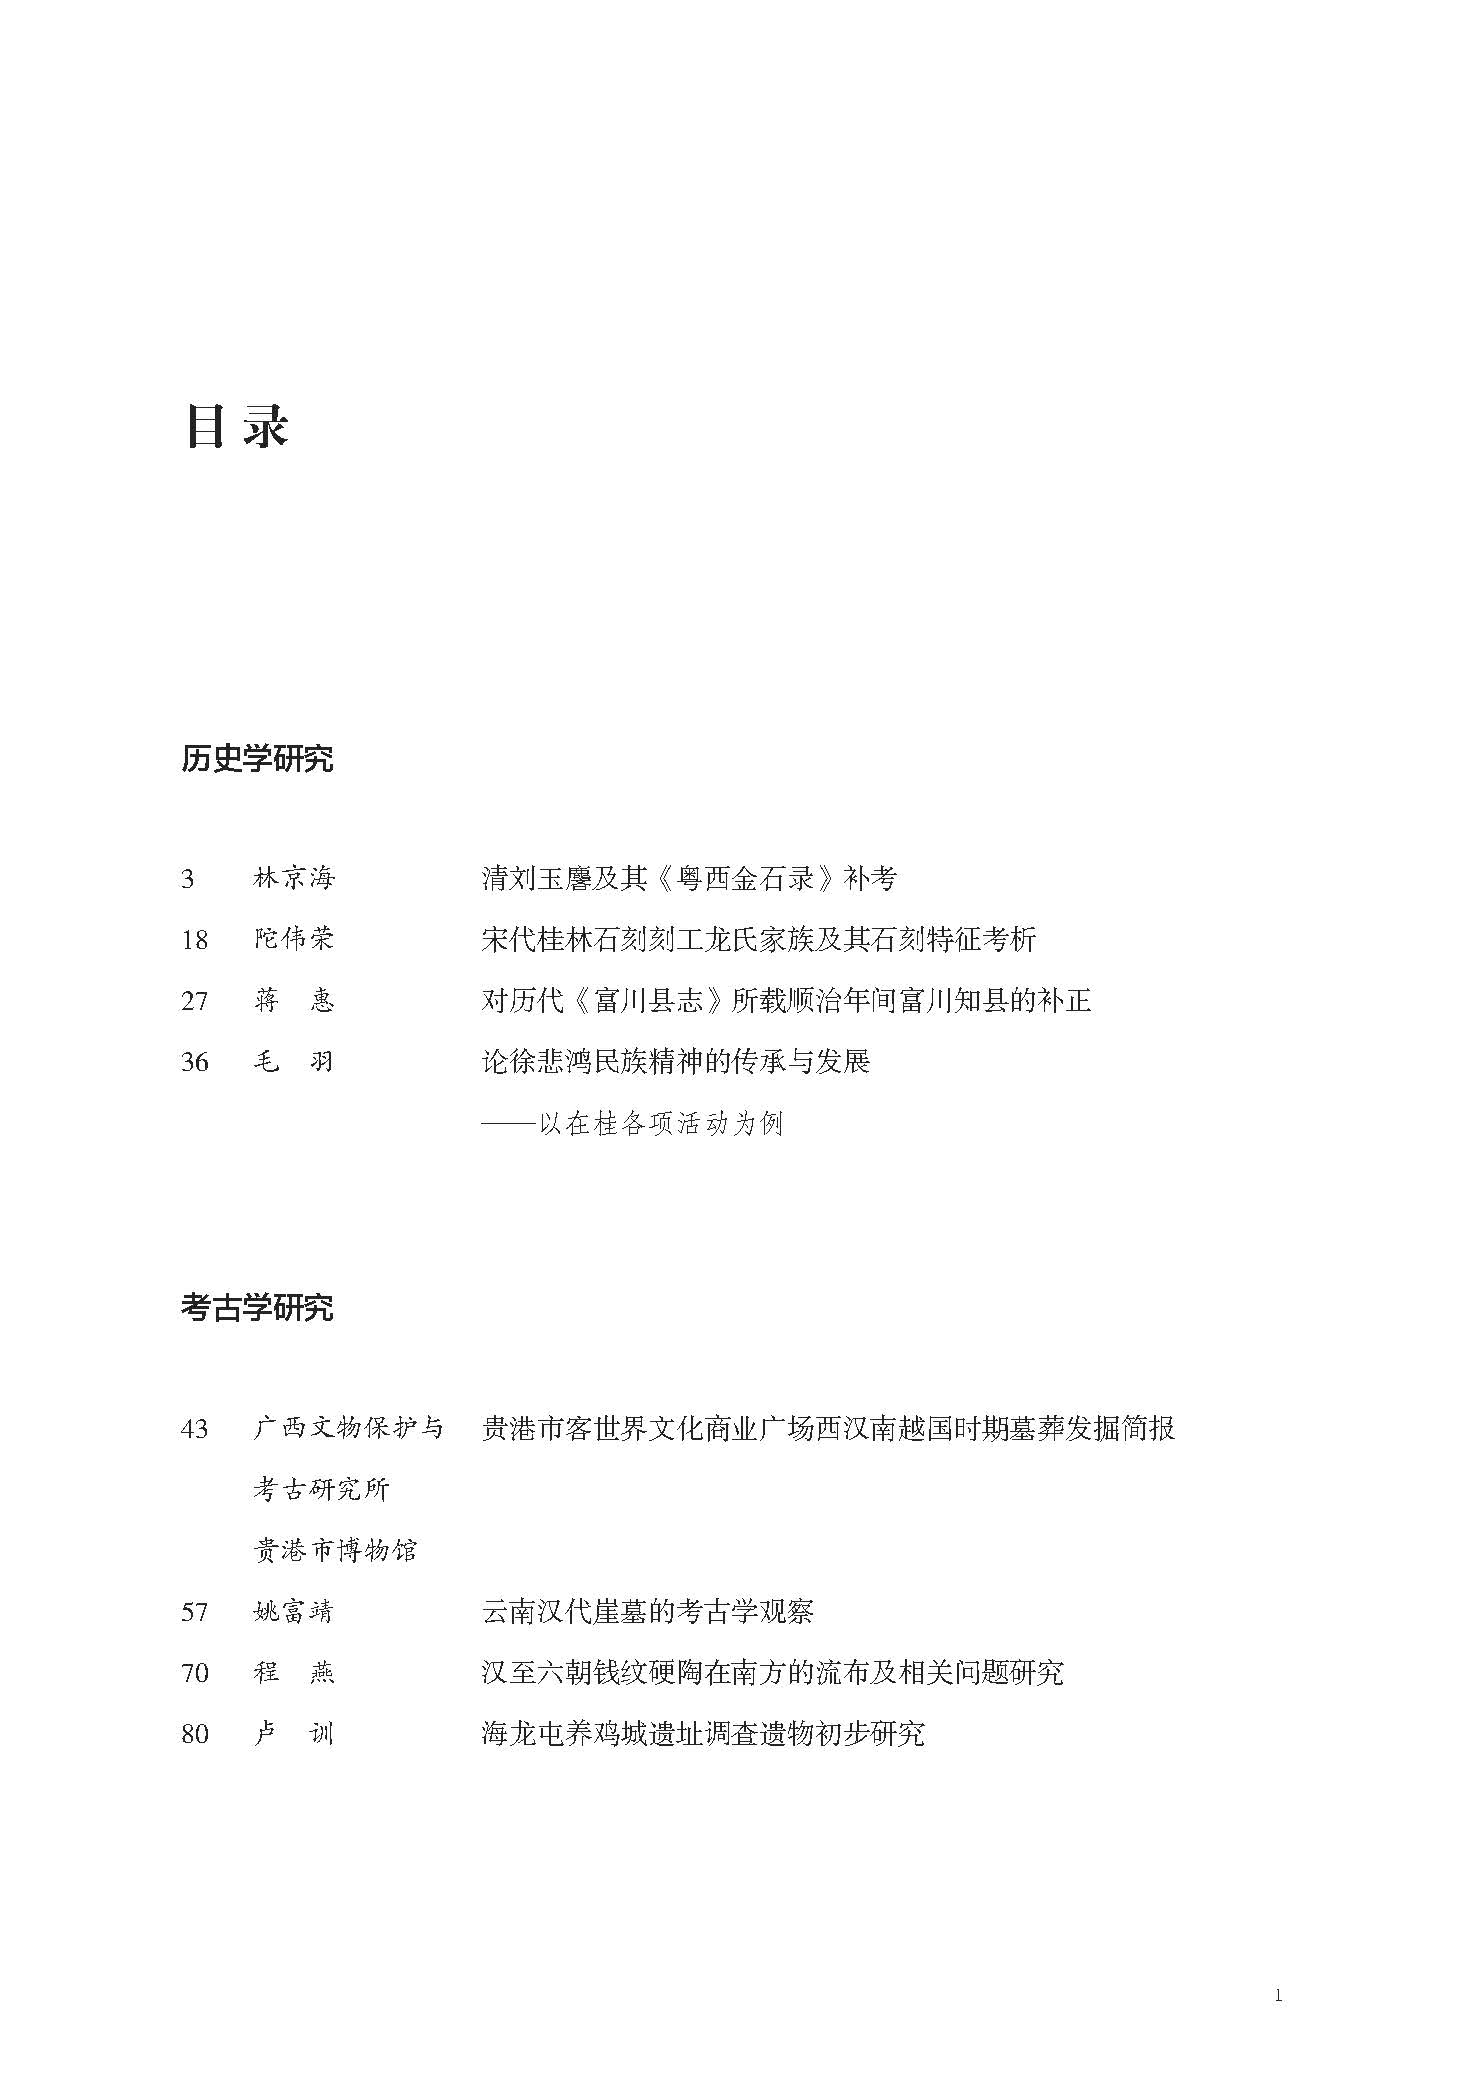 页面提取自－桂林博物馆文集（第10辑）（最终版）.pdf_页面_2.jpg